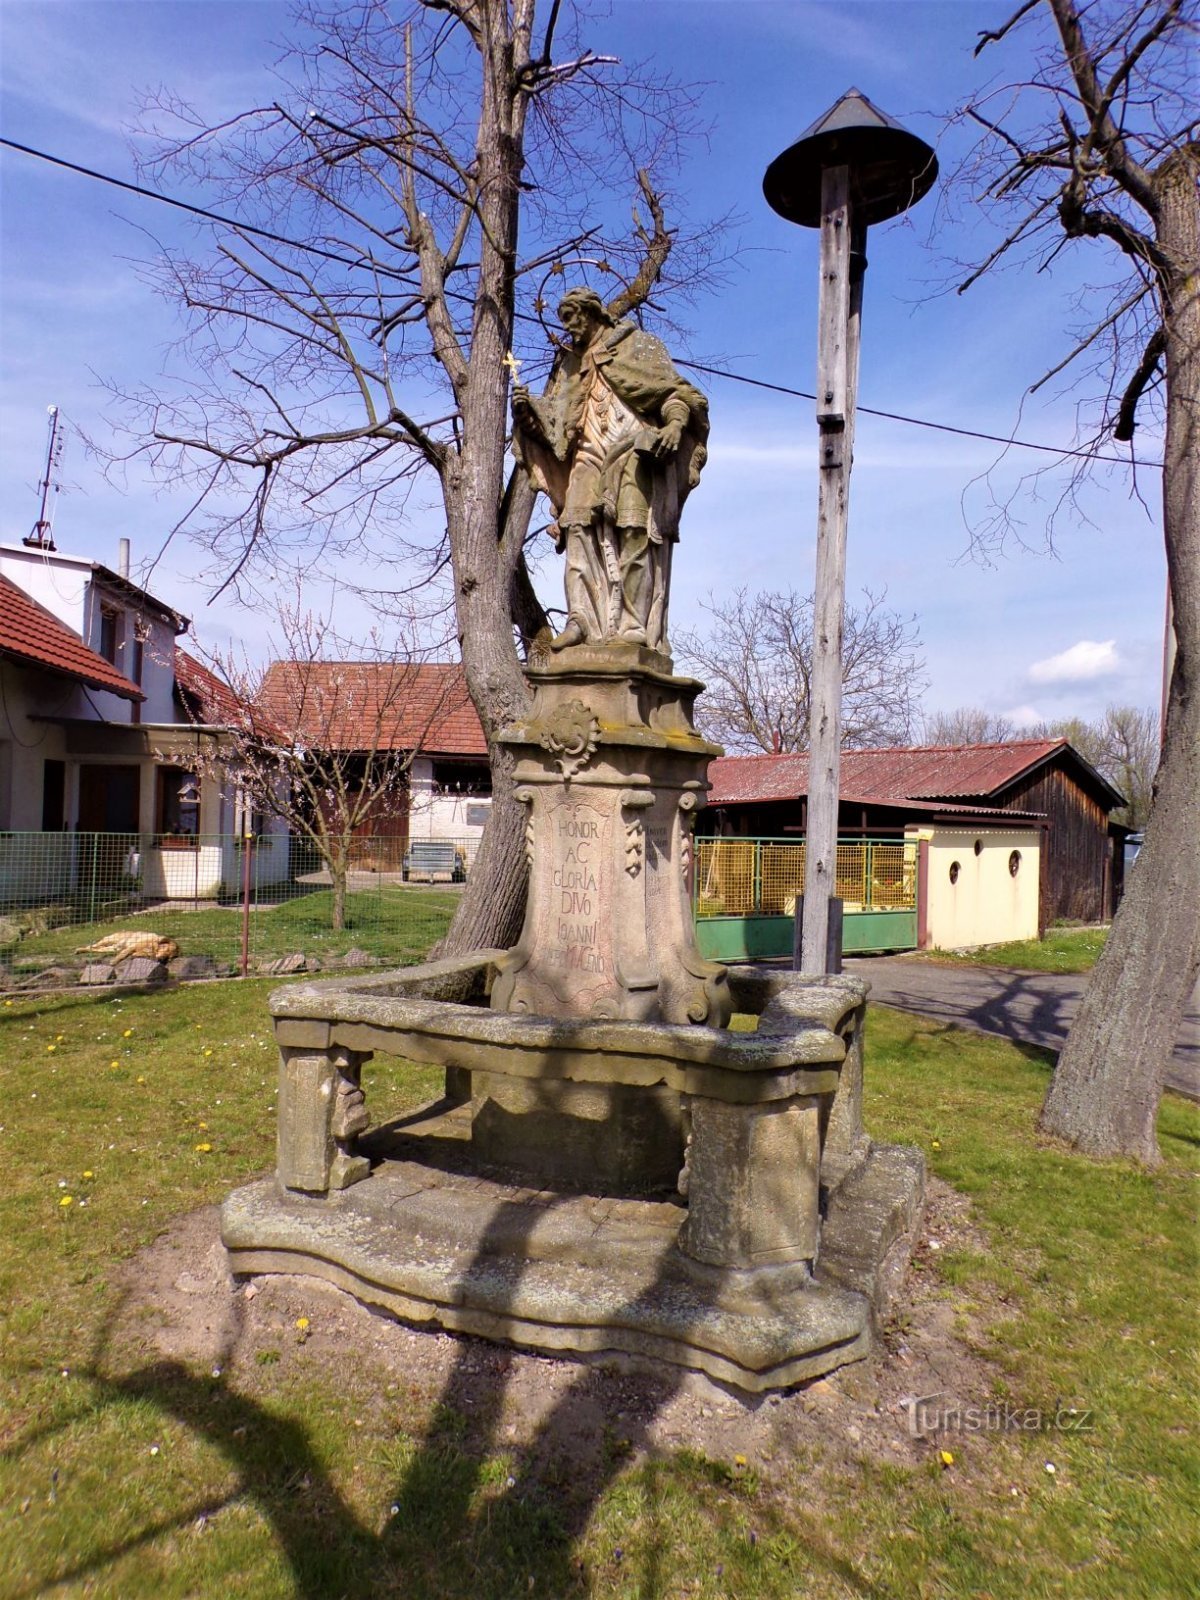 聖の像鐘楼を持つネポムクのヨハネ (Šaplava、30.4.2021 年 XNUMX 月 XNUMX 日)